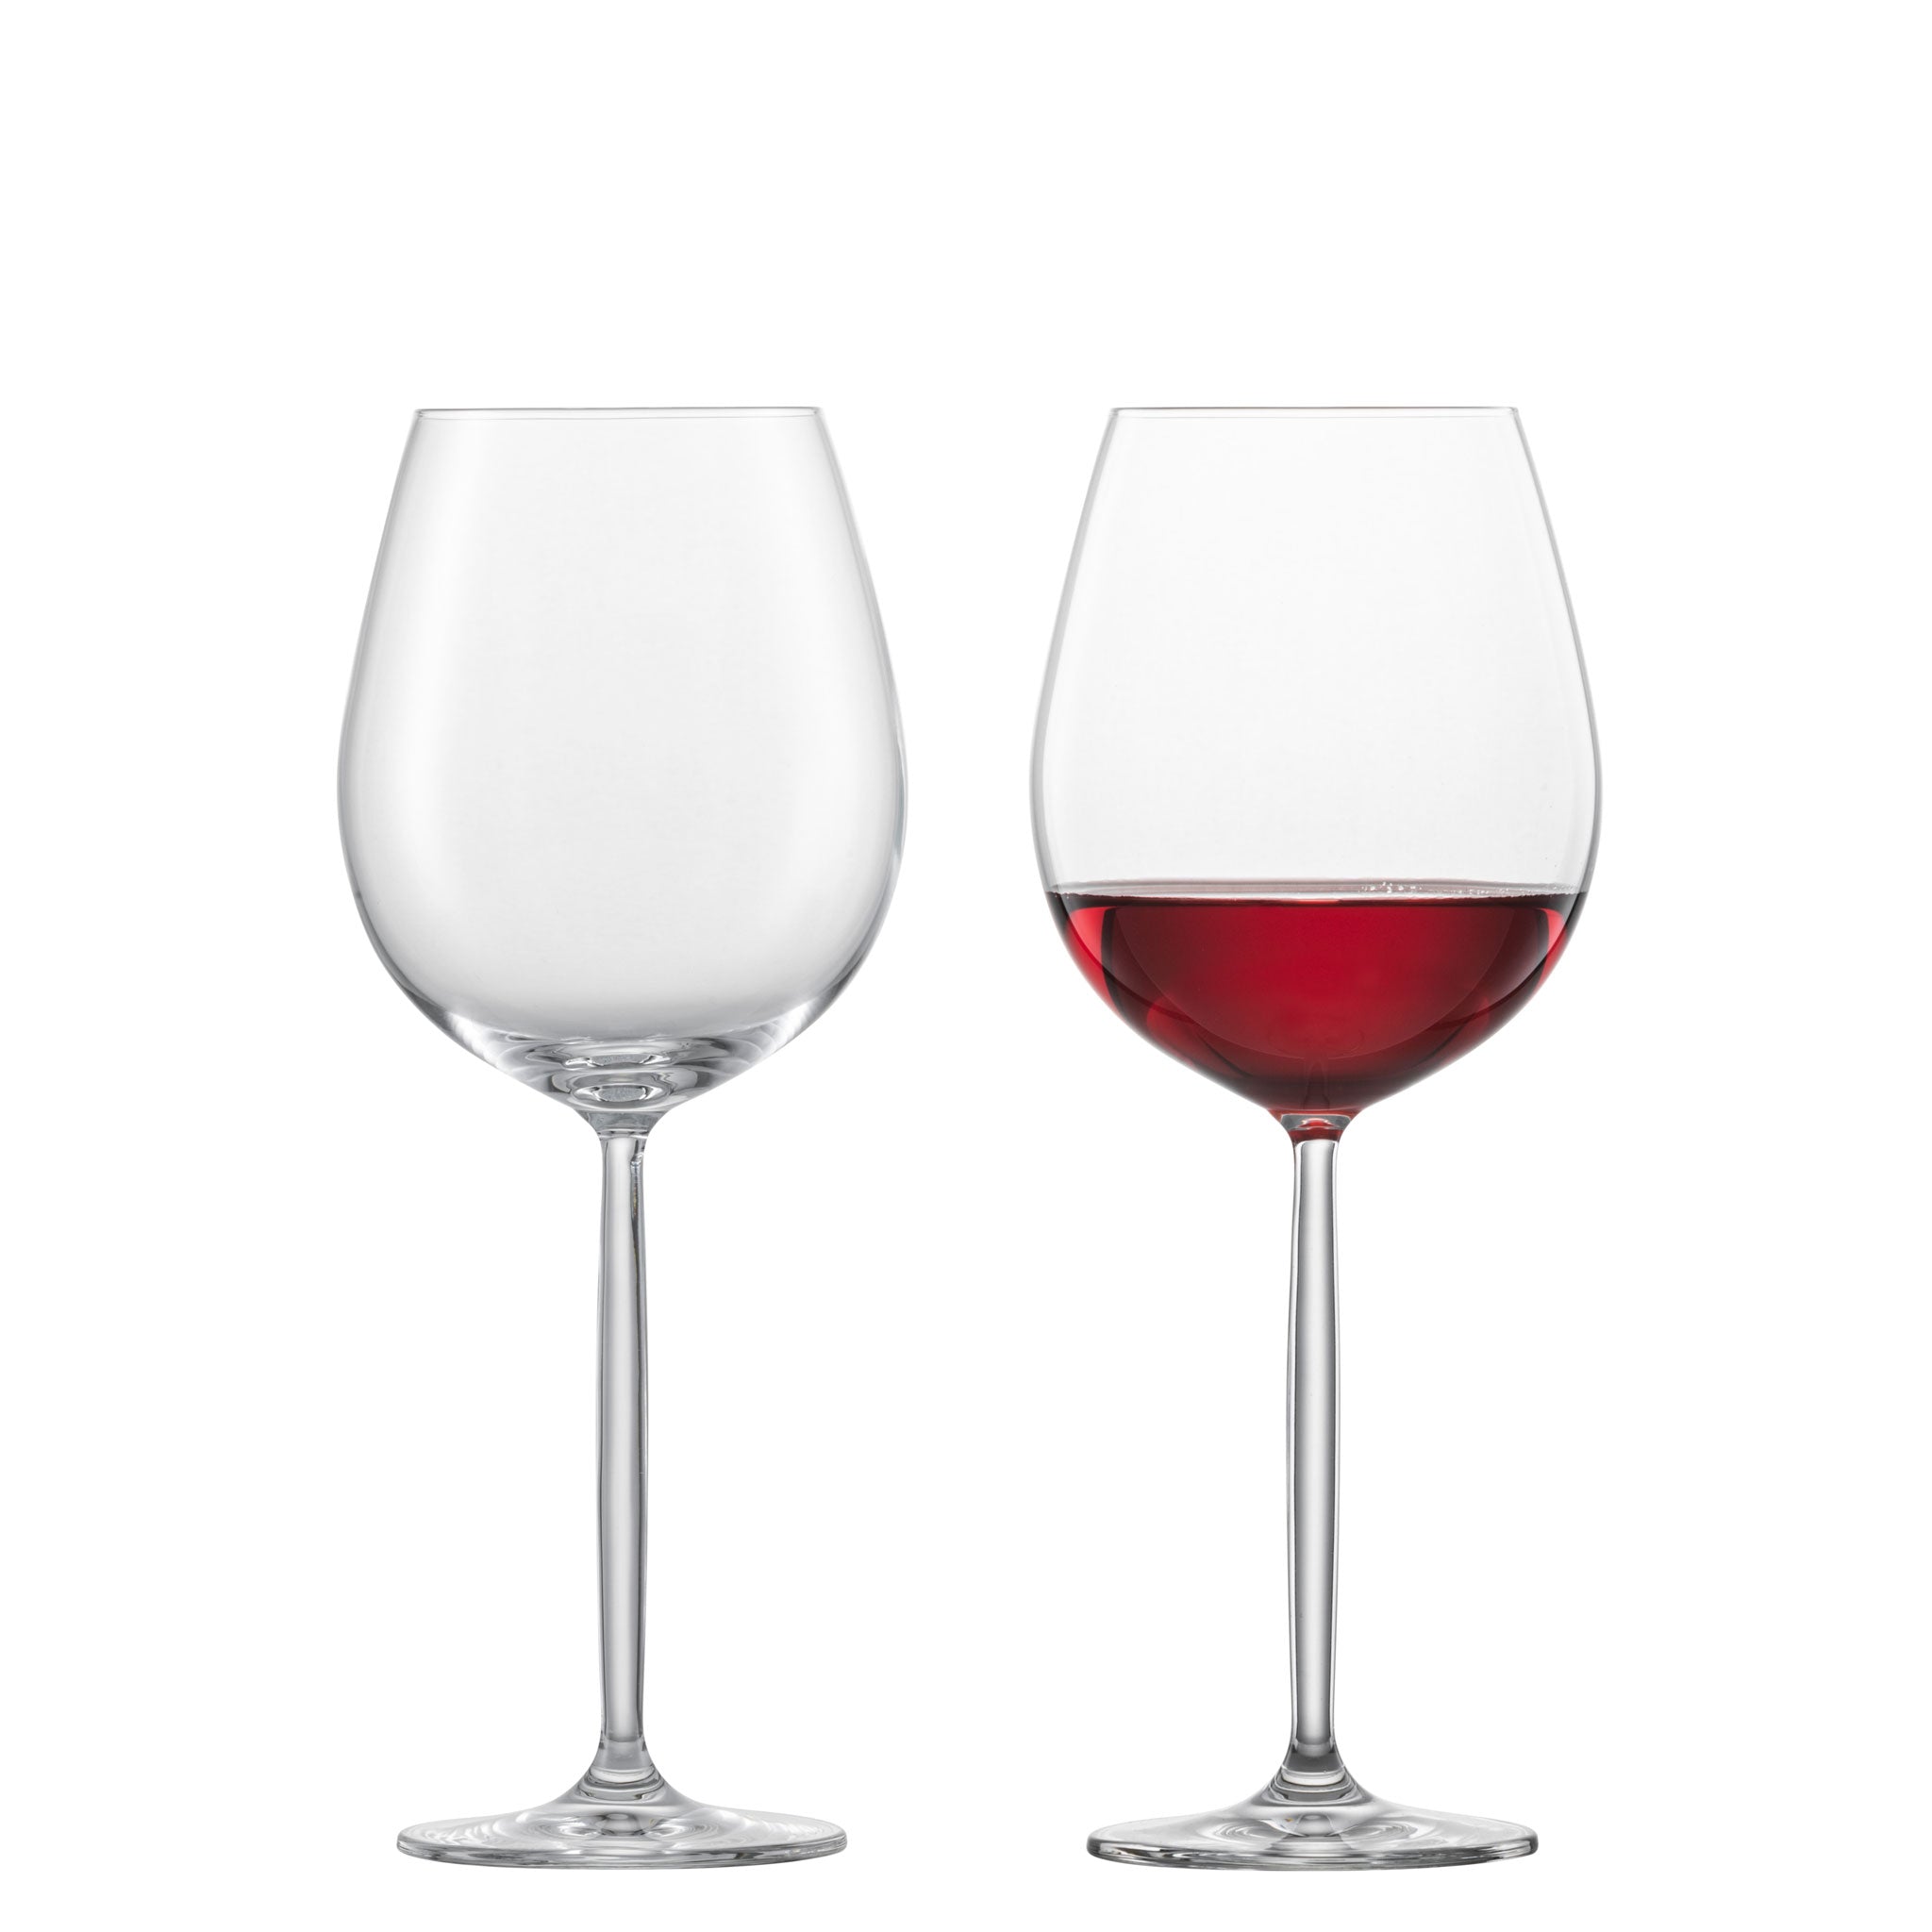 赤ワイン用グラス | ツヴィーゼル公式サイト – ツヴィーゼル・ジャパン